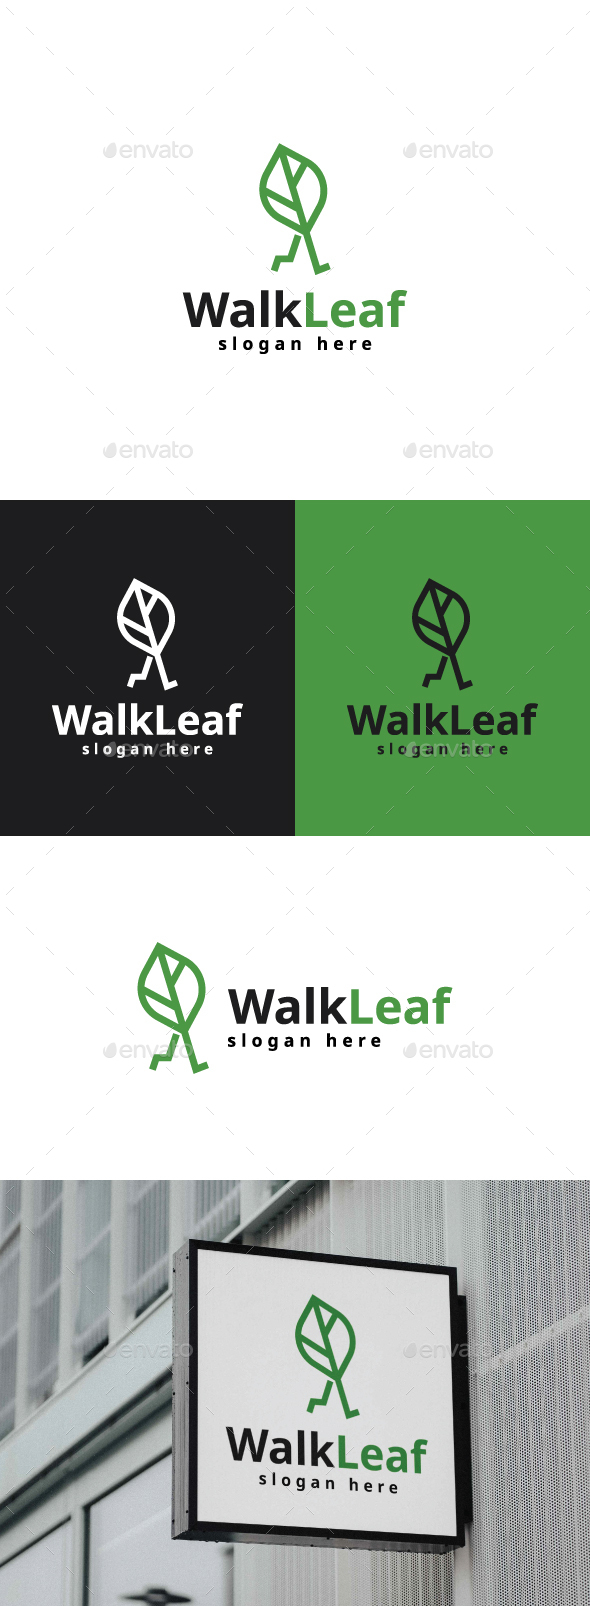 [DOWNLOAD]Walking Leaf Logo